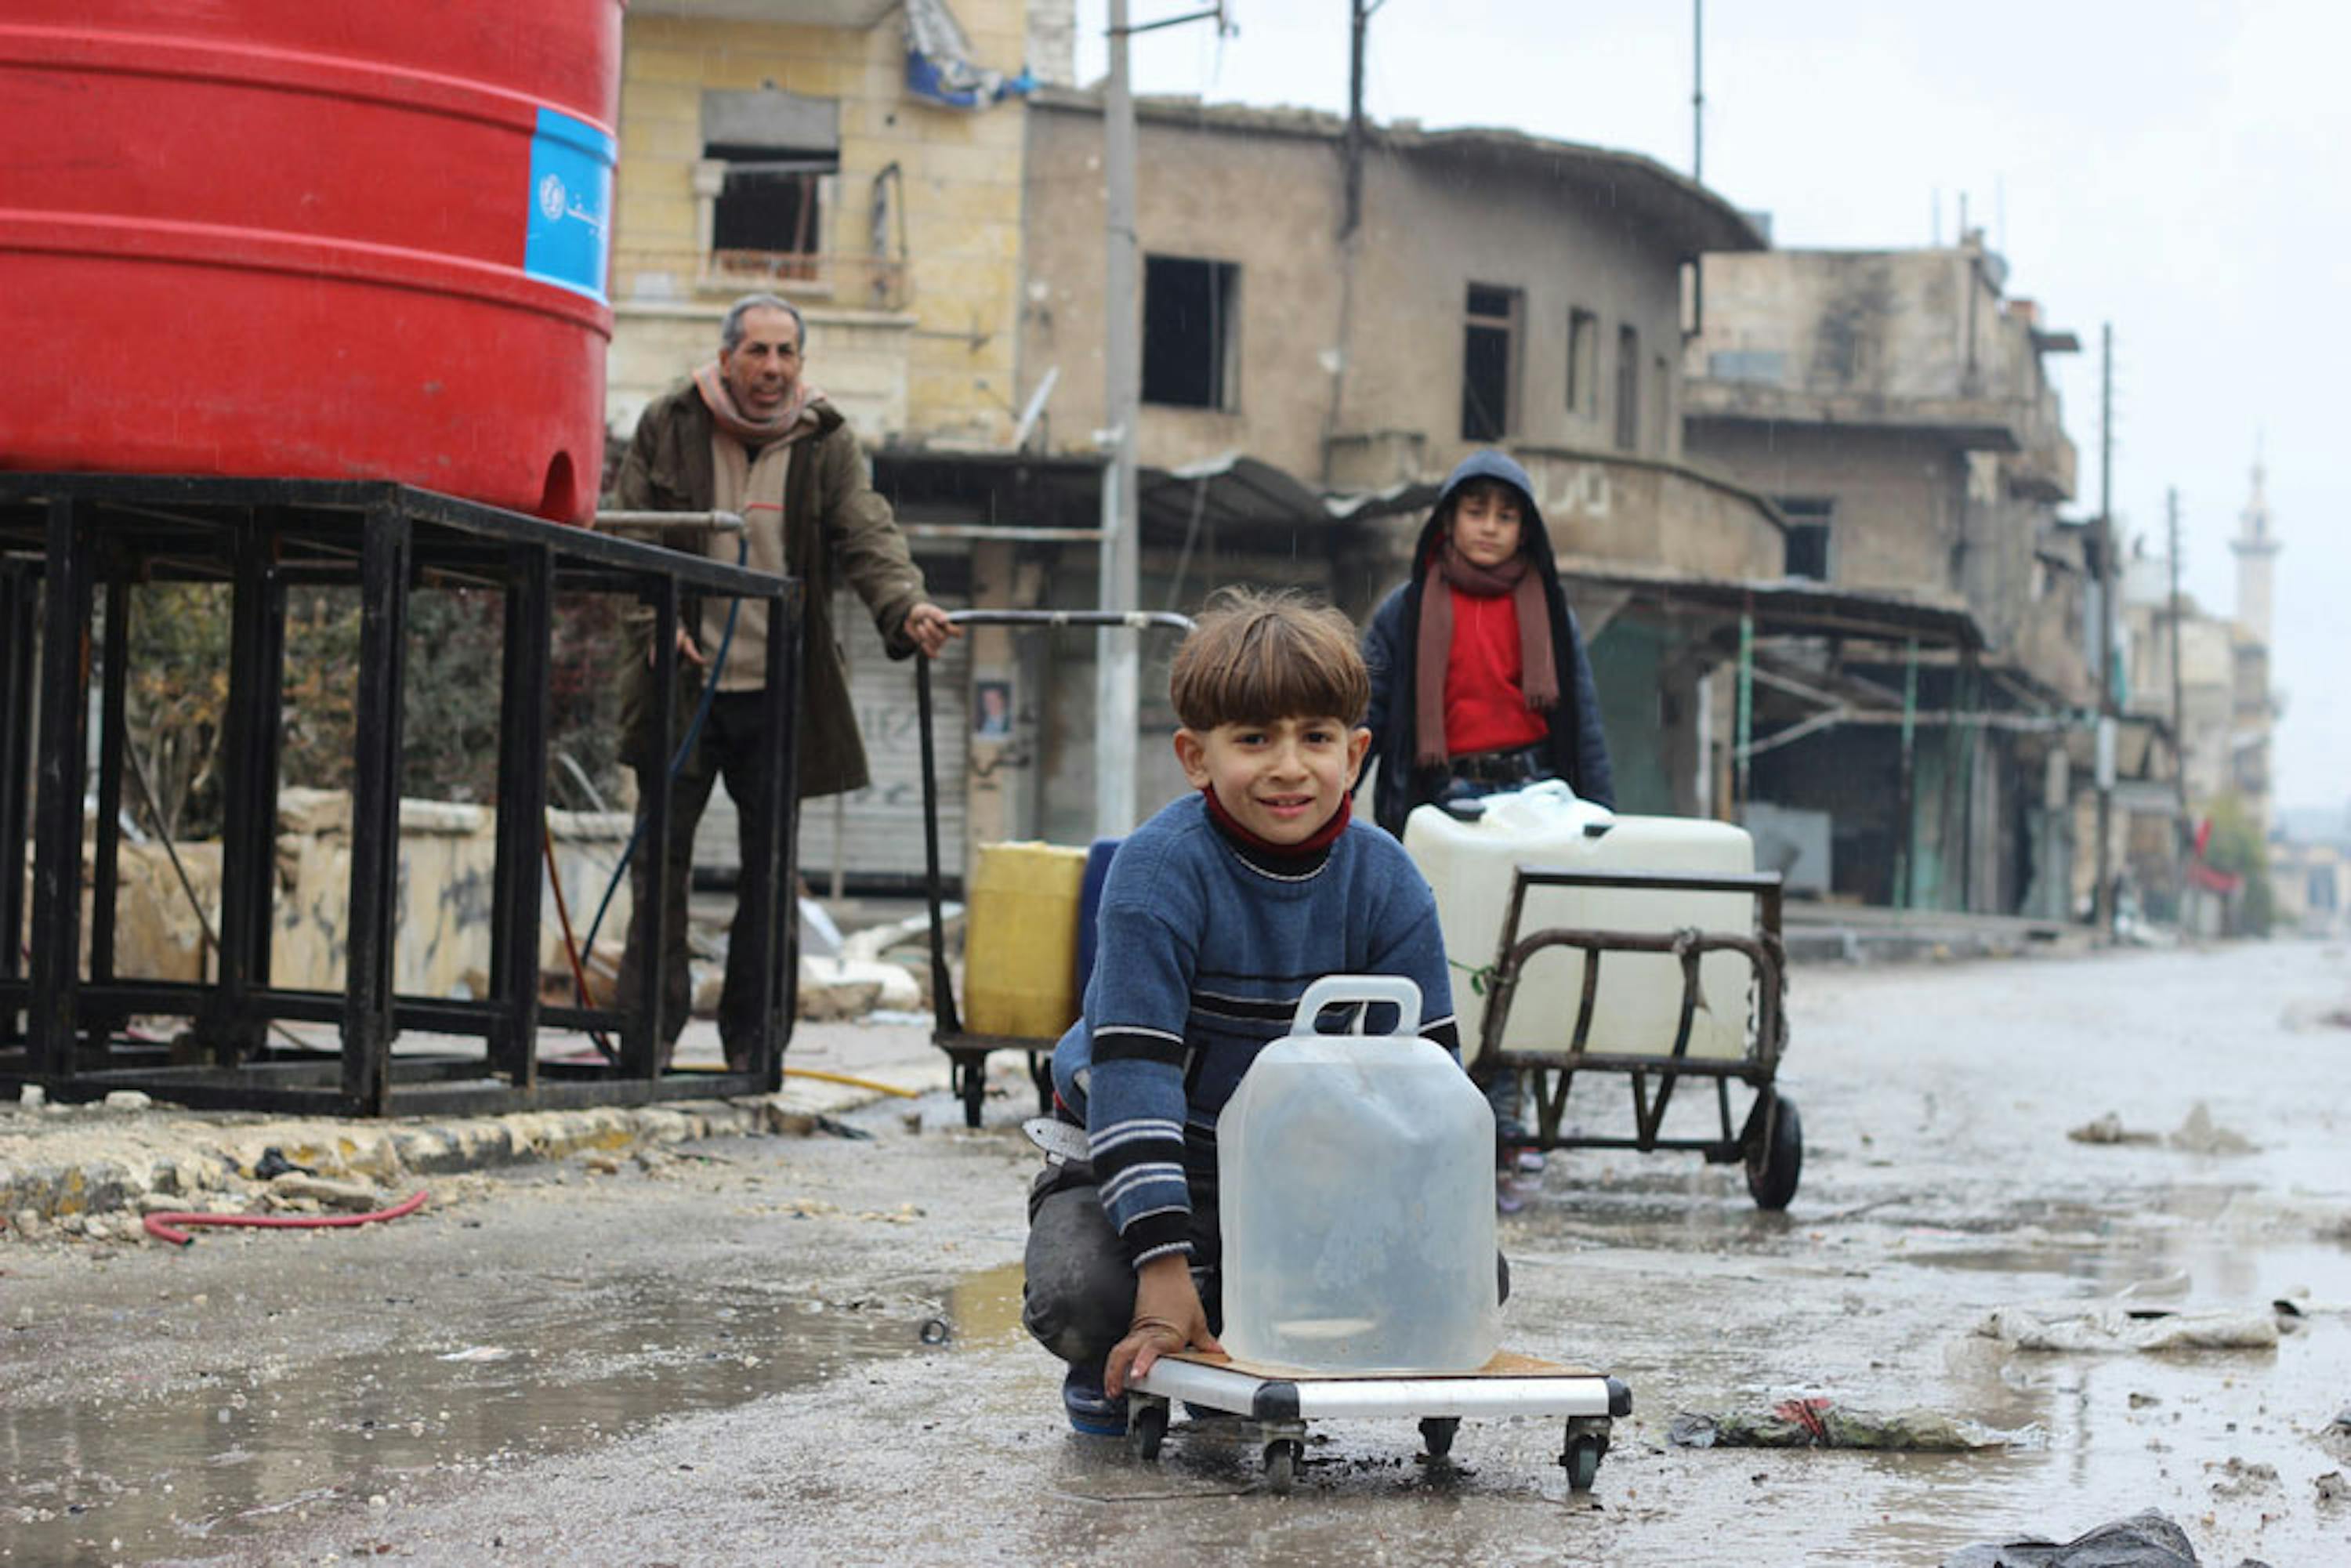 Una cisterna di acqua potabile installata dall'UNICEF a Shakoor, quartiere di Aleppo (Siria), uno dei più tragici teatri di guerra degli ultimi anni - ©UNICEF/UN046880/Al Issa